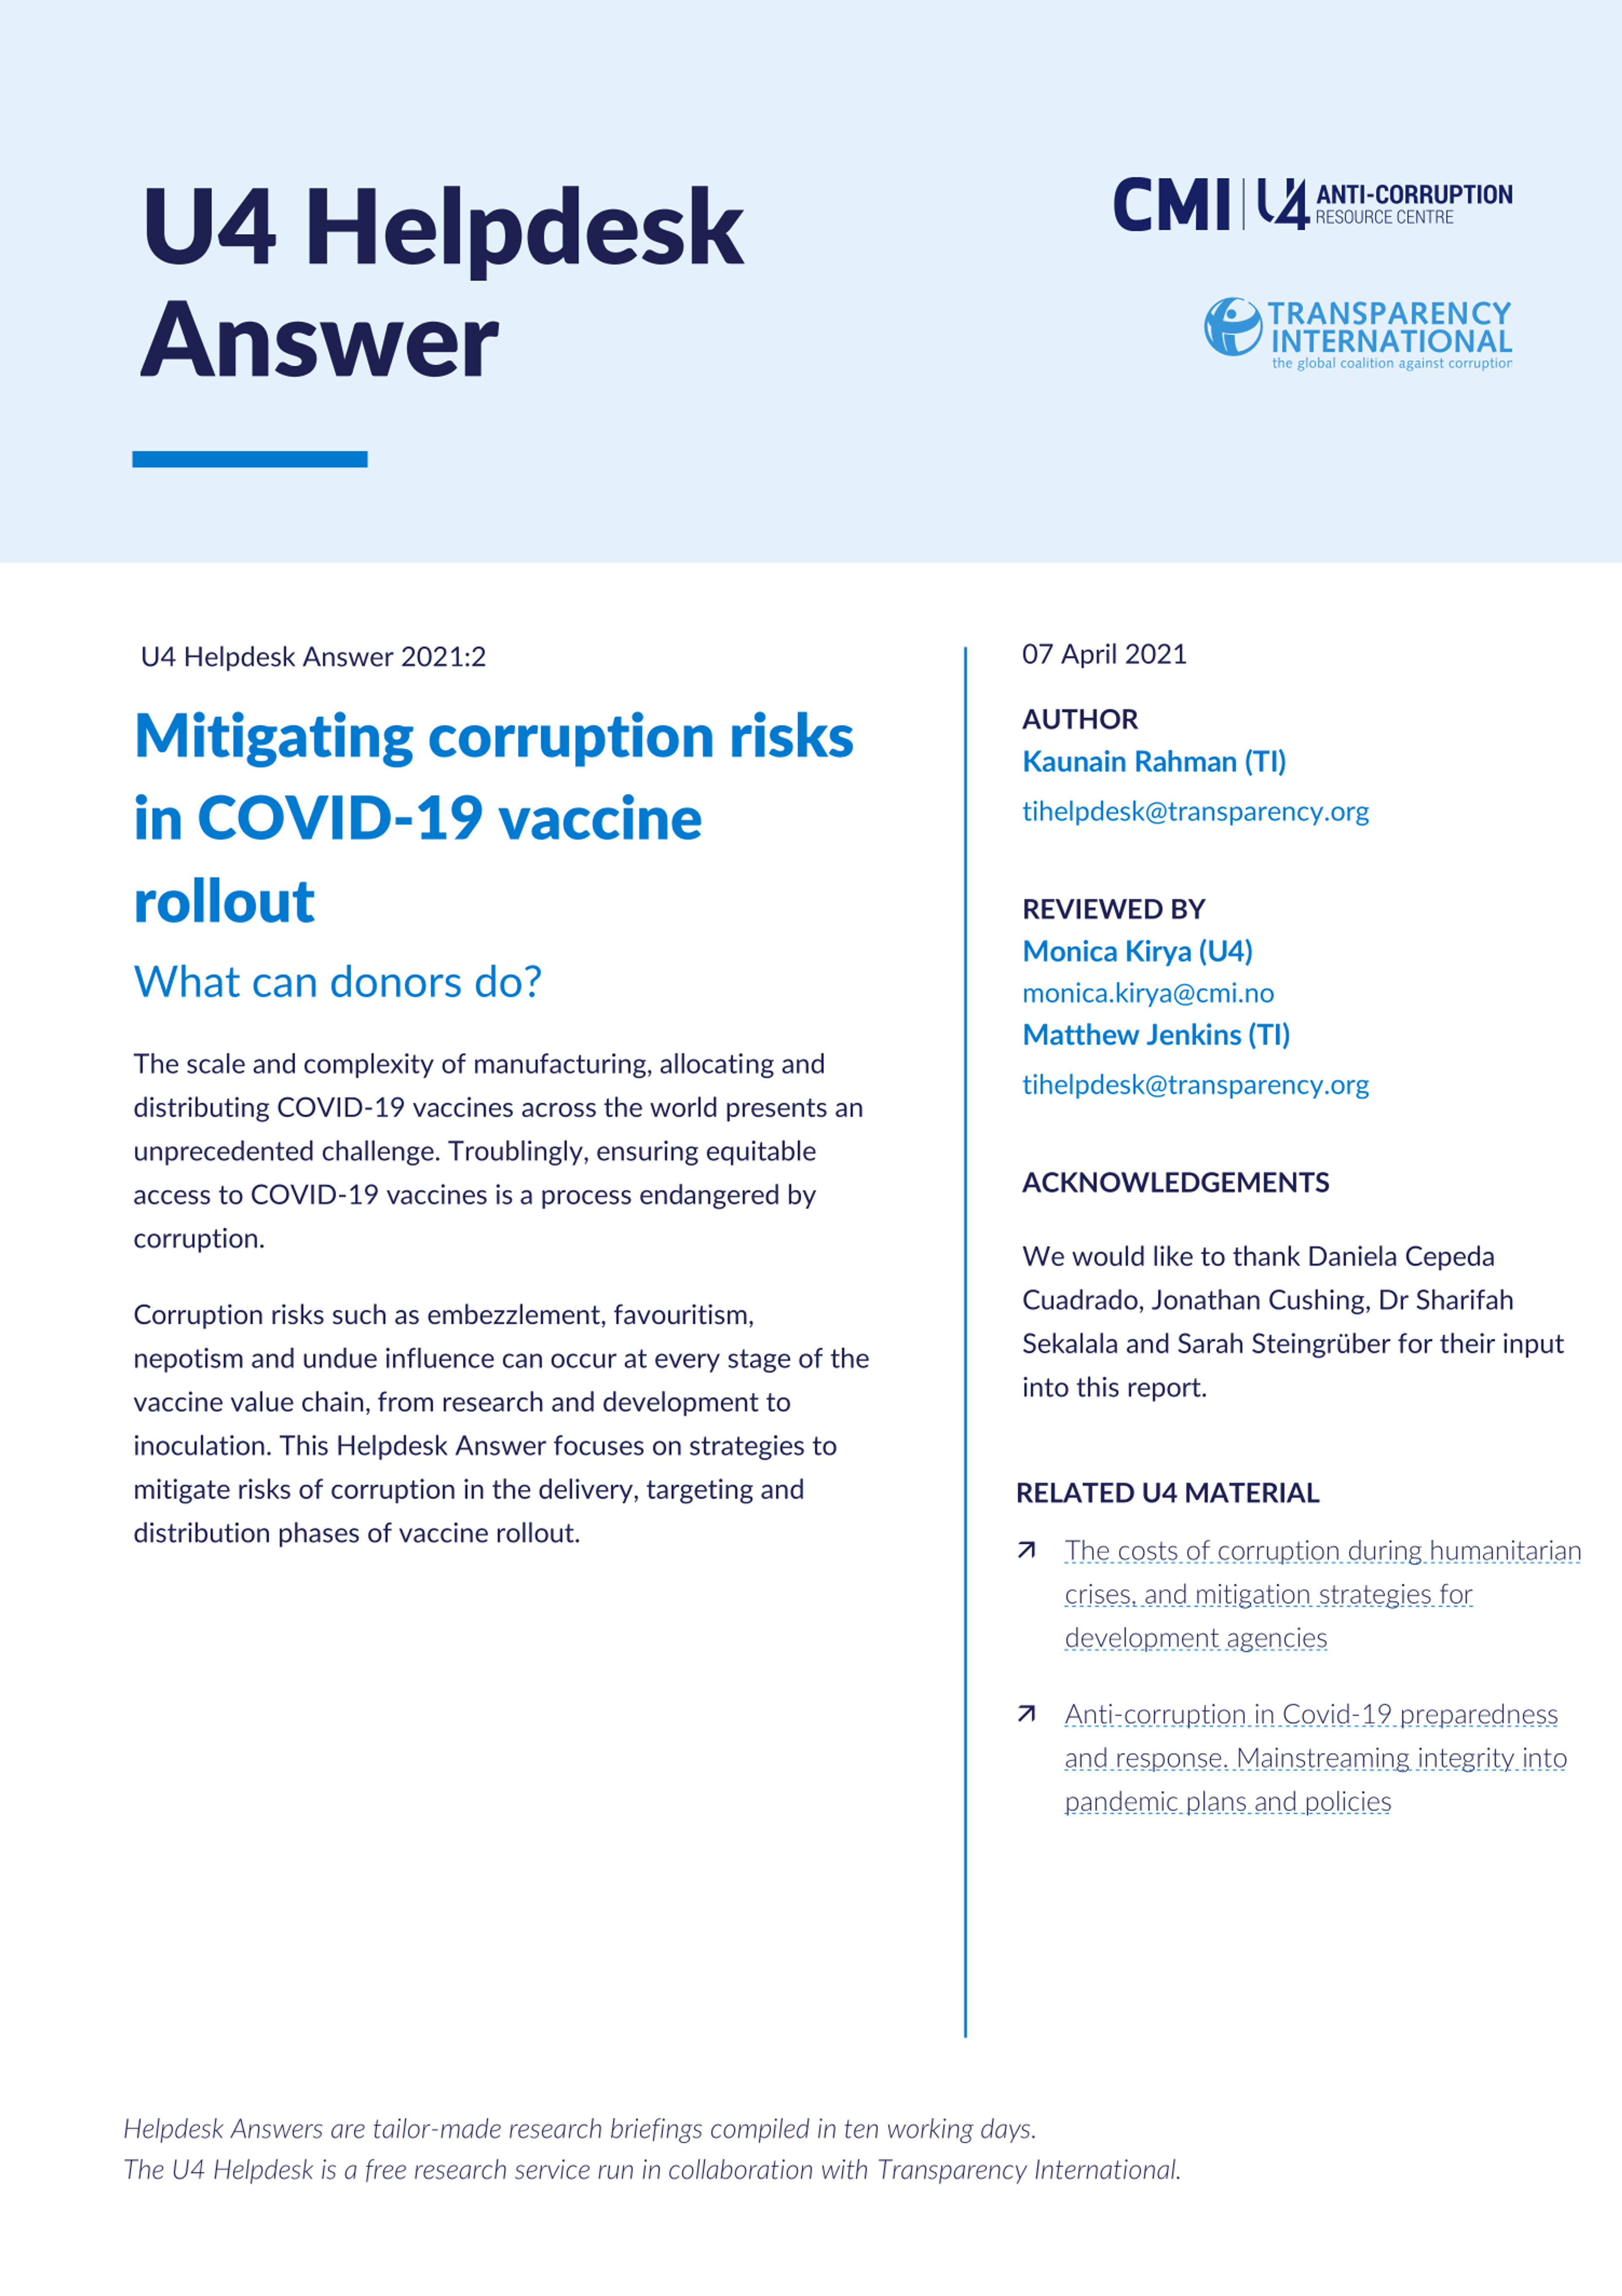 Mitigating corruption risks in Covid-19 vaccine rollout